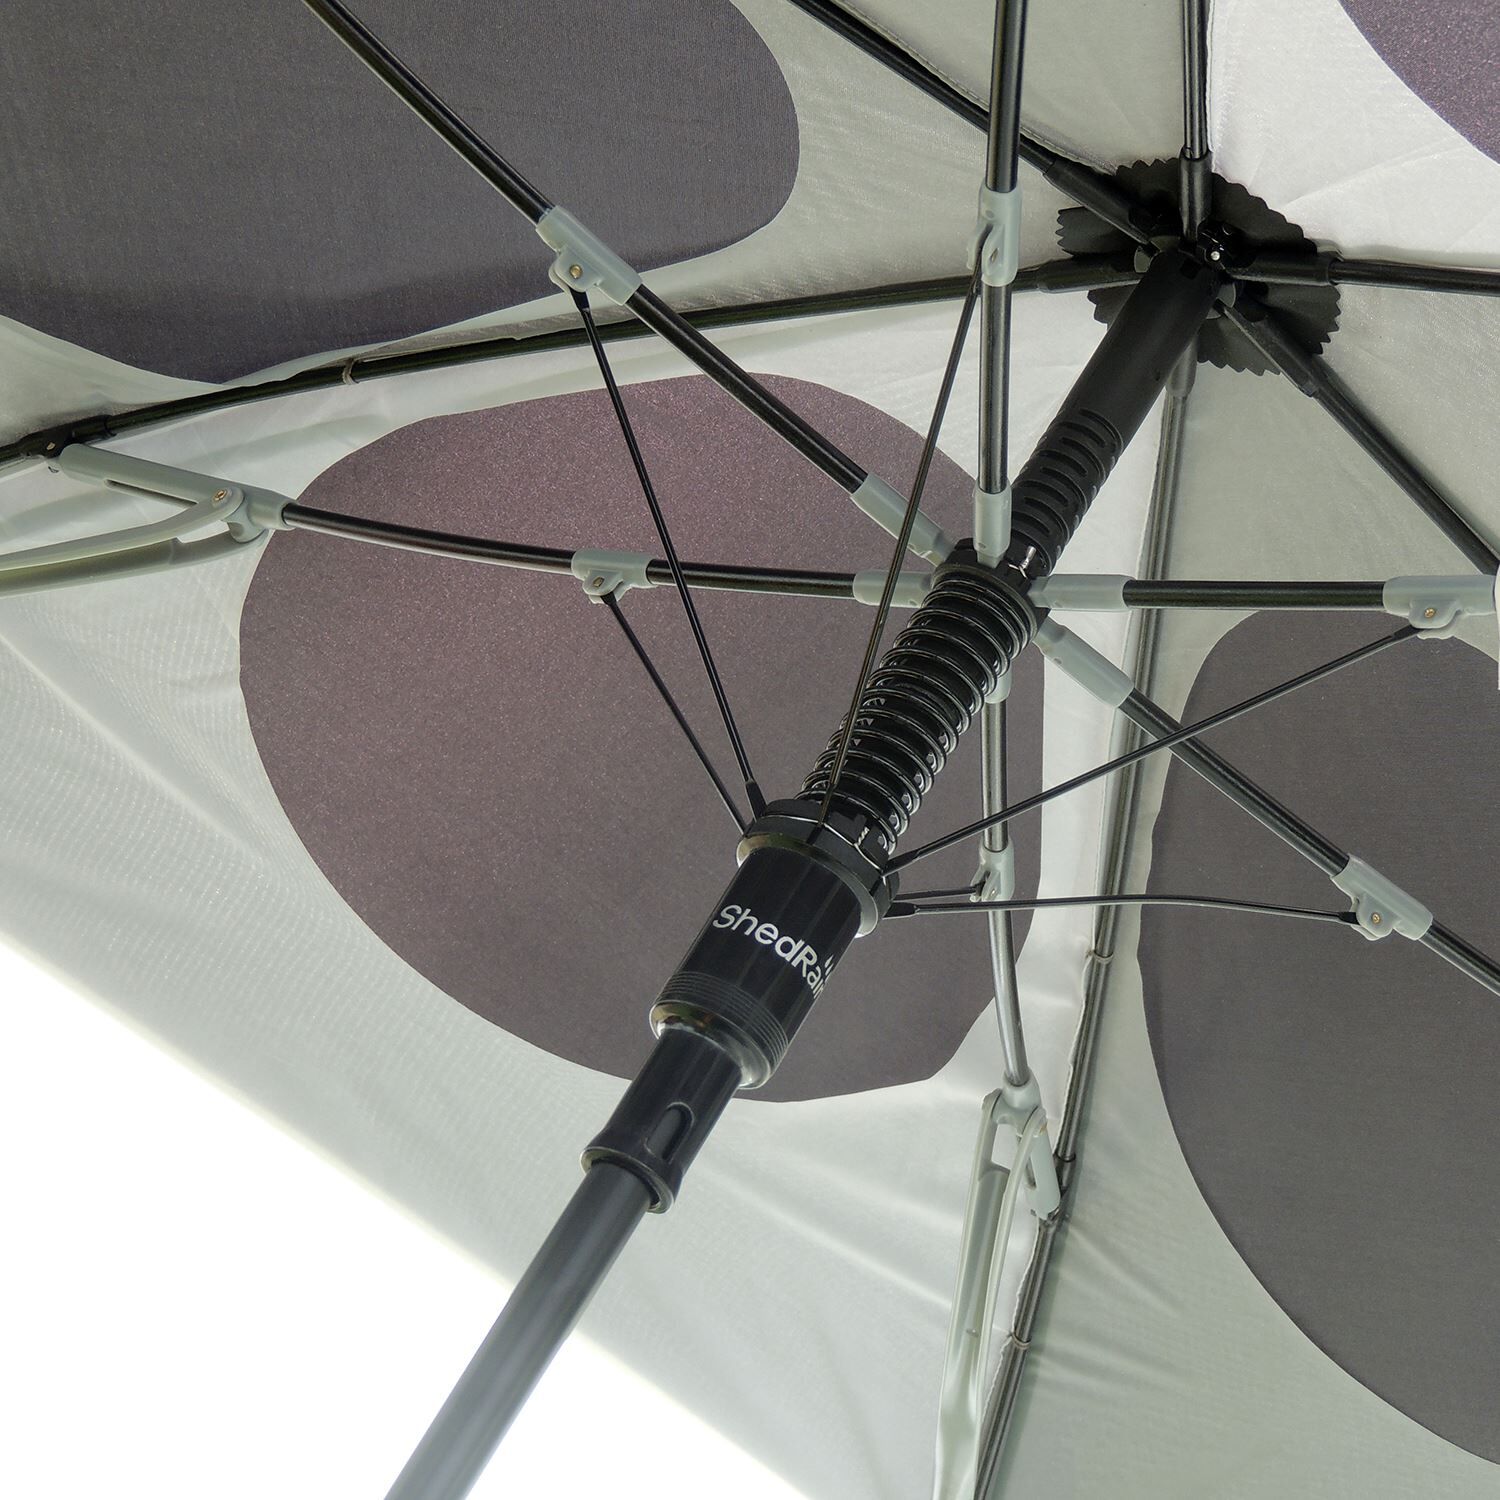 Custom Branded ShedRain Umbrellas